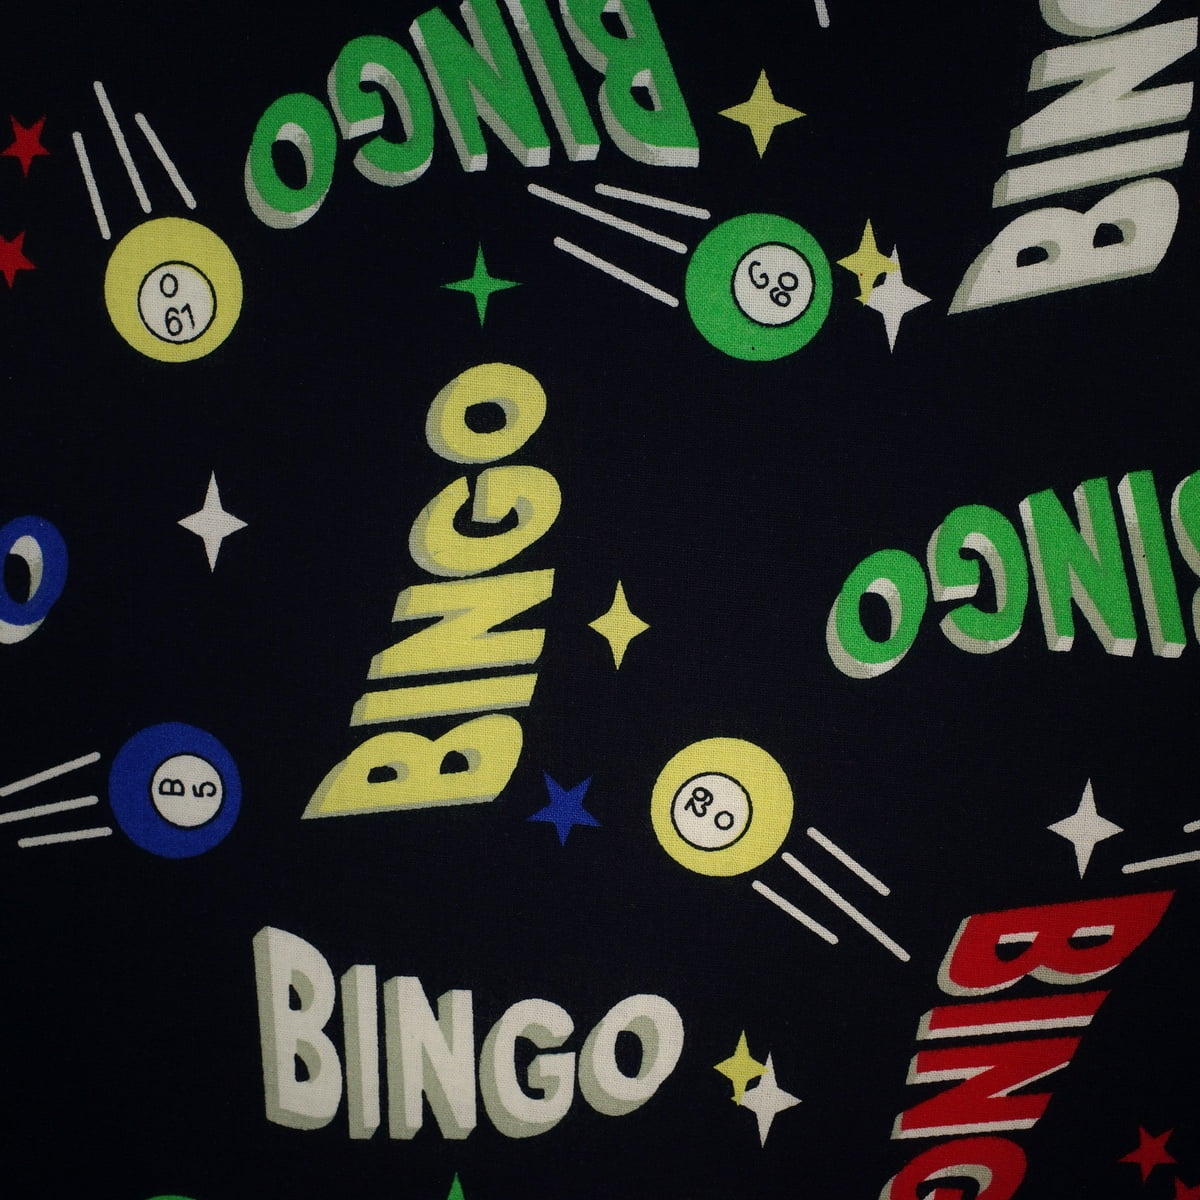 Bingo SEAT CUSHION Casino Del Sol Resort Fabric Foldable Travel